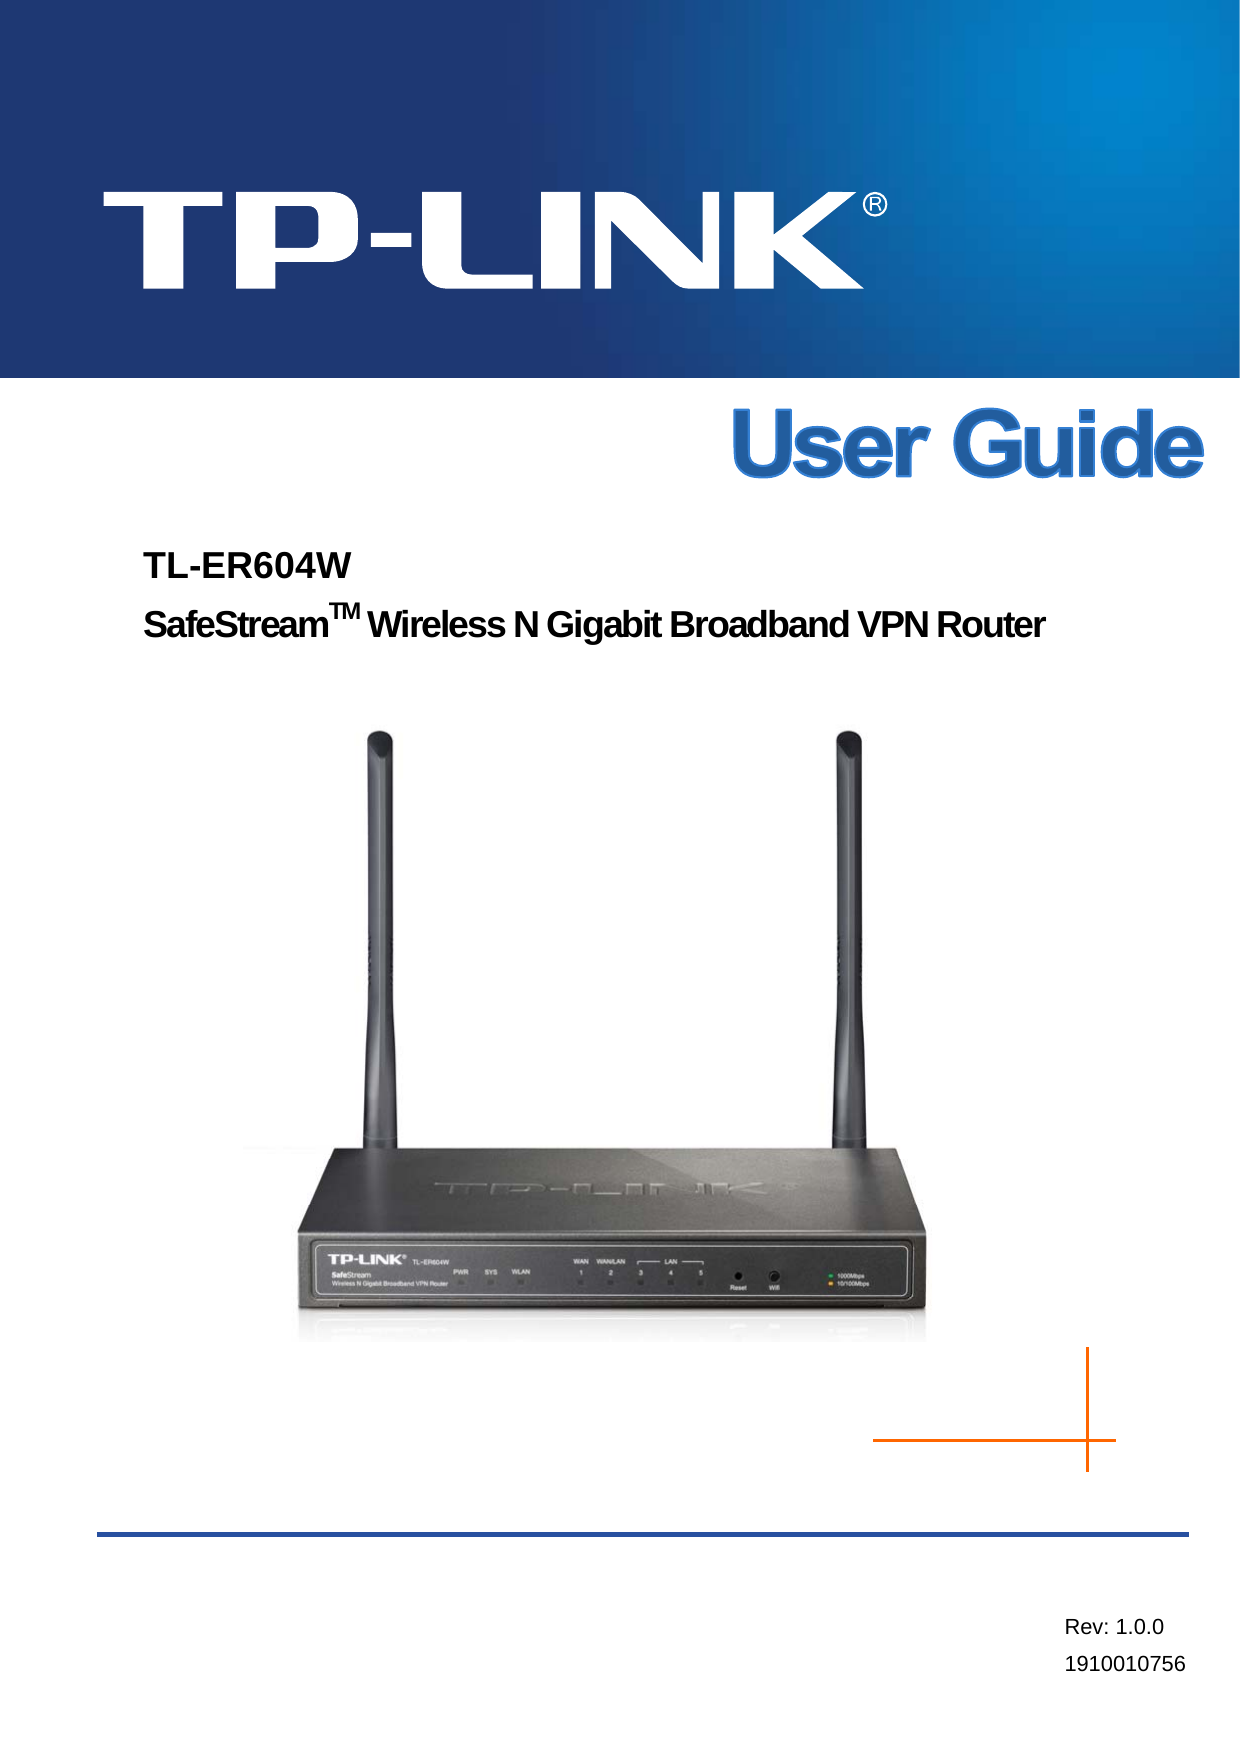  TL-ER604W SafeStreamTM Wireless N Gigabit Broadband VPN Router     Rev: 1.0.0 1910010756 